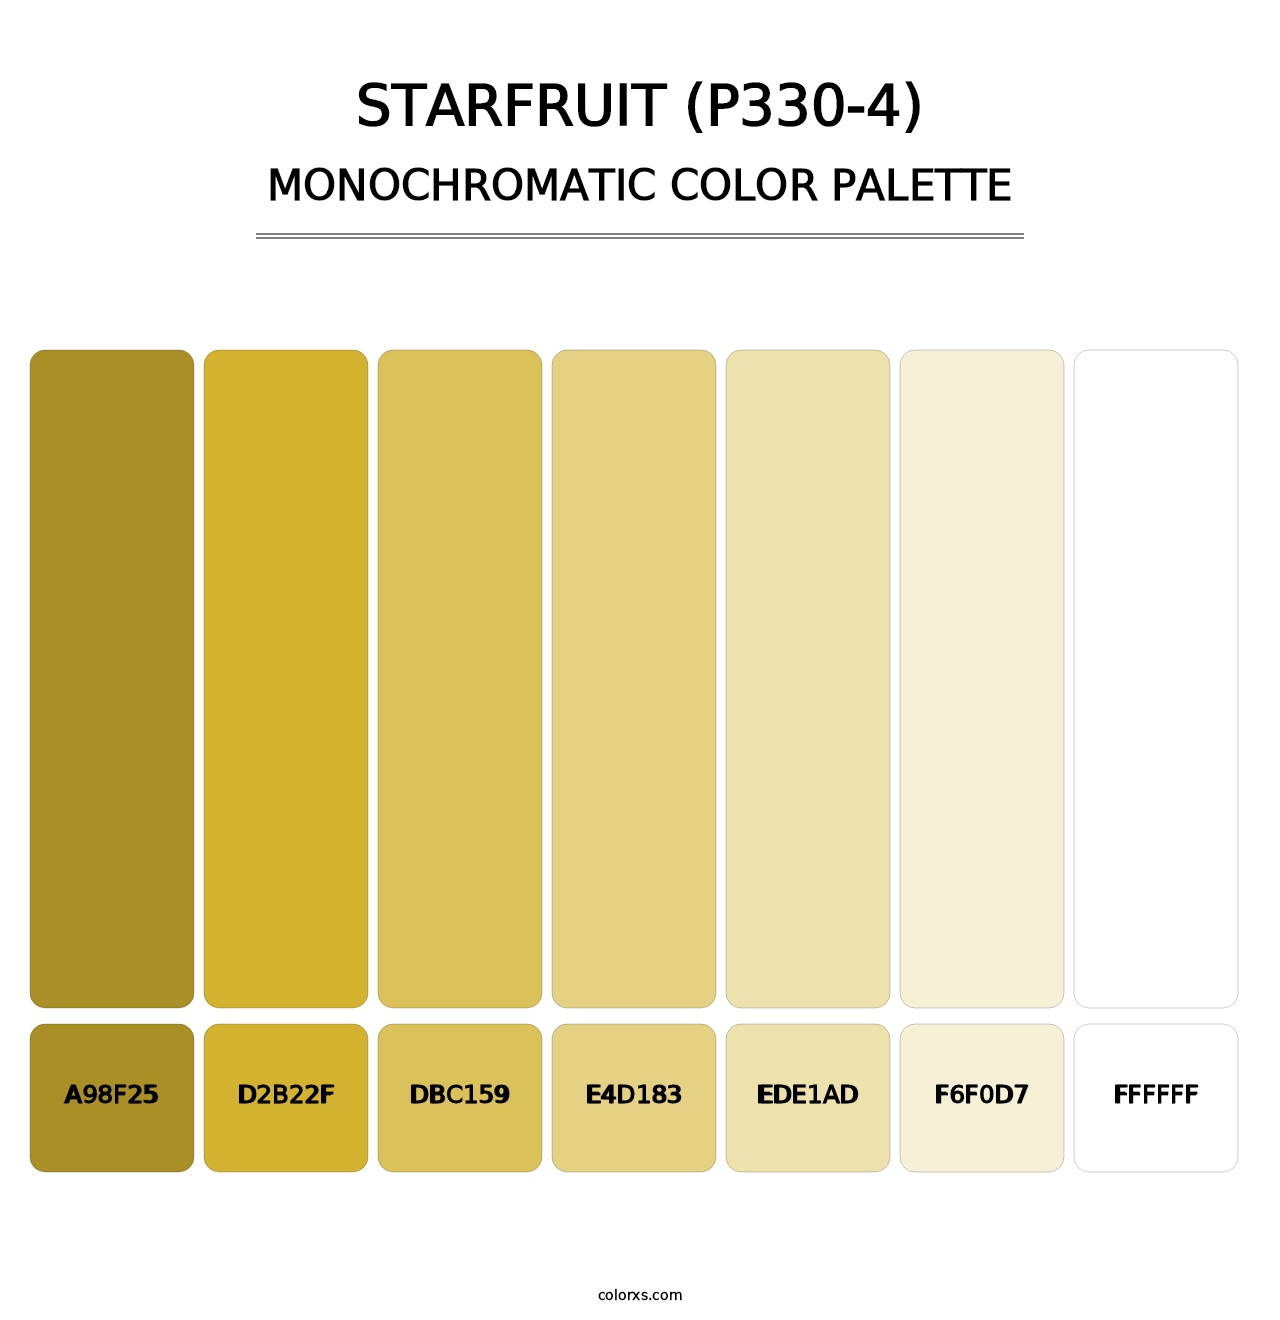 Starfruit (P330-4) - Monochromatic Color Palette